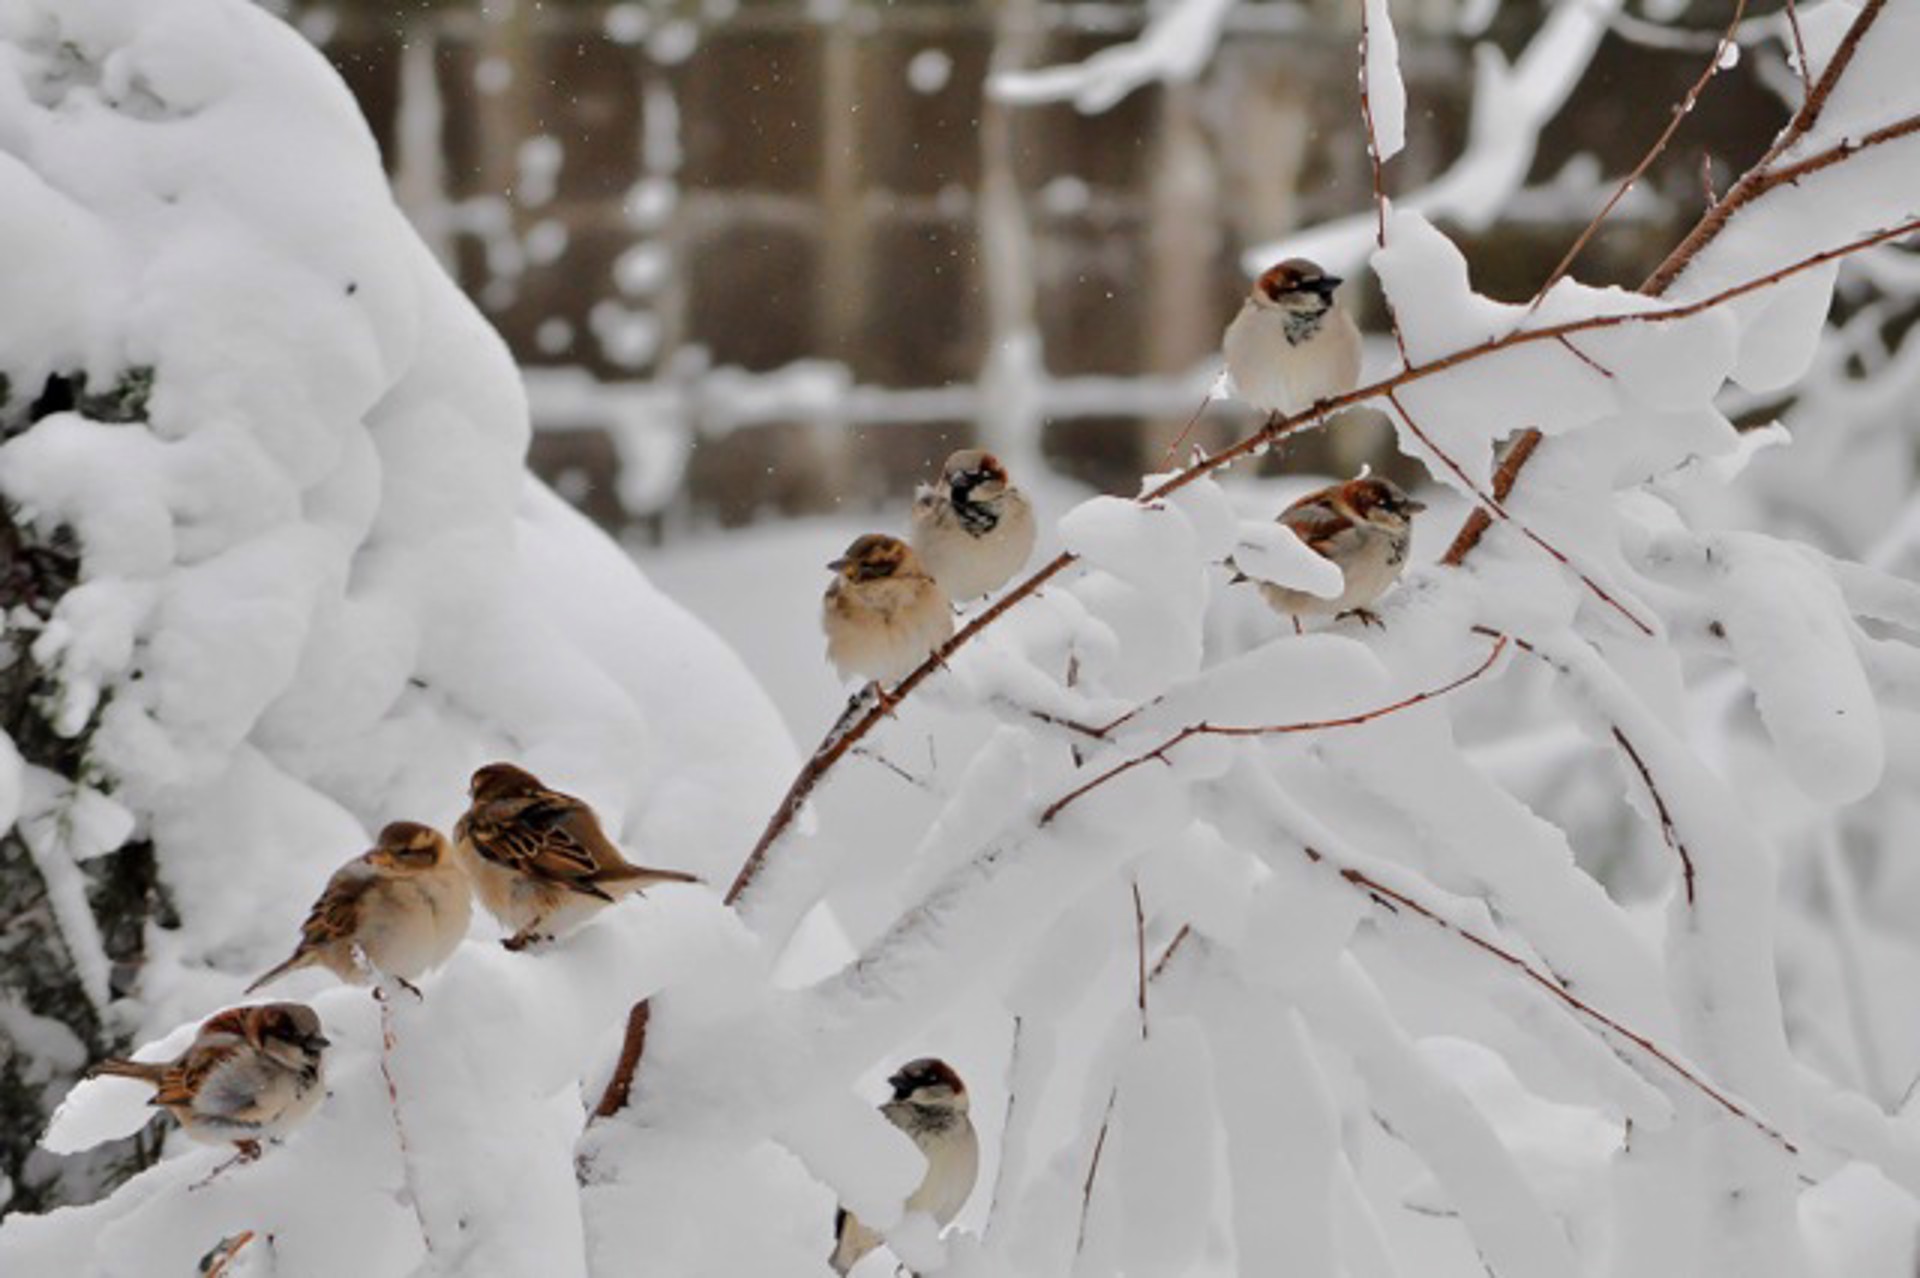 Sparrows In Snow by Susumu Kishihara